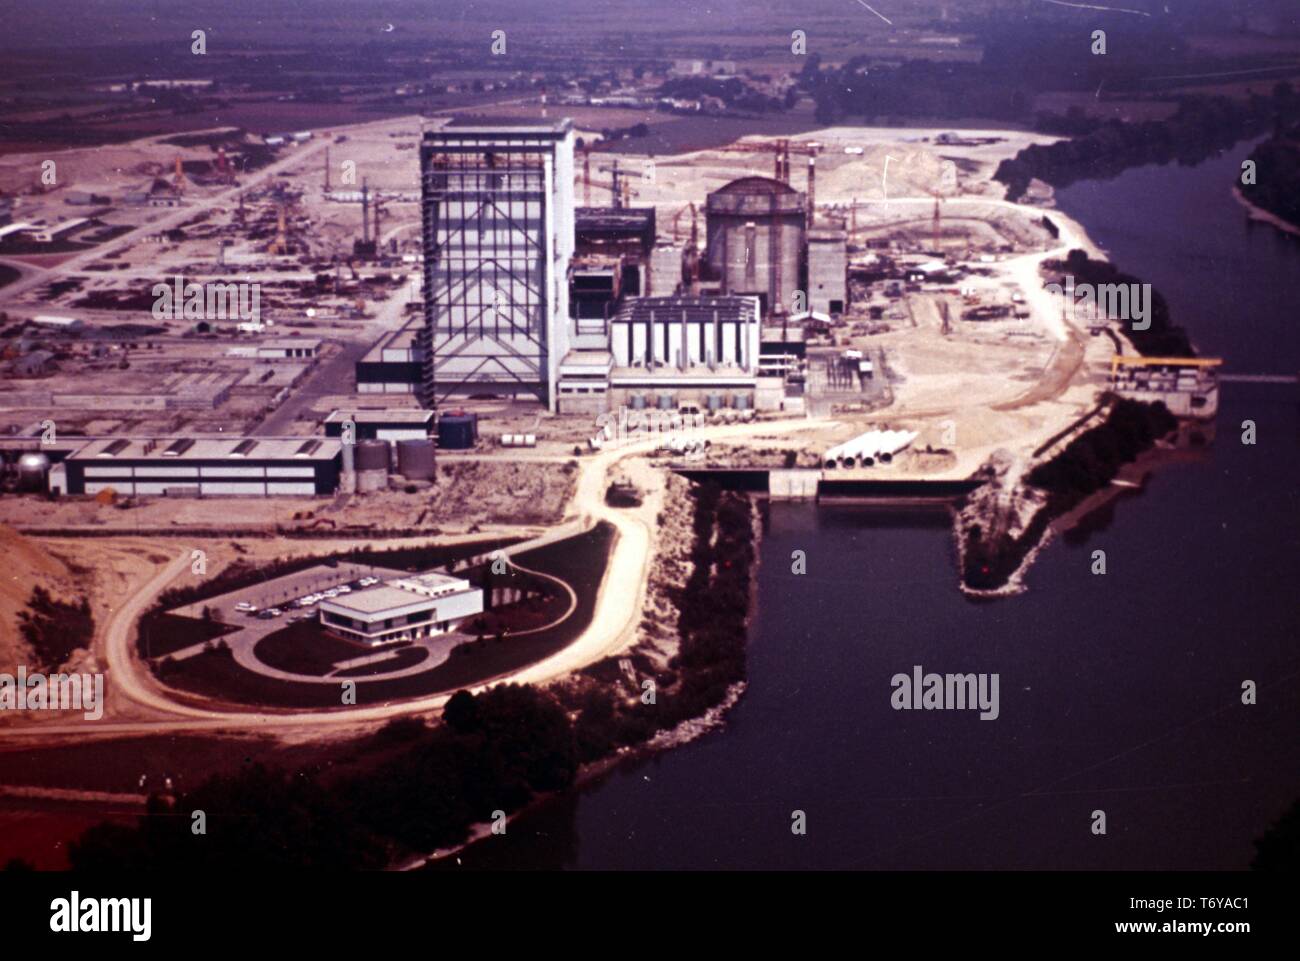 Luftaufnahme von Bauarbeiten am Kernkraftwerk Bugey, mit zwei PWR (druckwasserreaktoren) und einem UNGG (Uran Naturel Graphit Gaz) Reaktor, Bugey, Frankreich, 1970. Mit freundlicher Genehmigung des US-Ministeriums für Energie. () Stockfoto